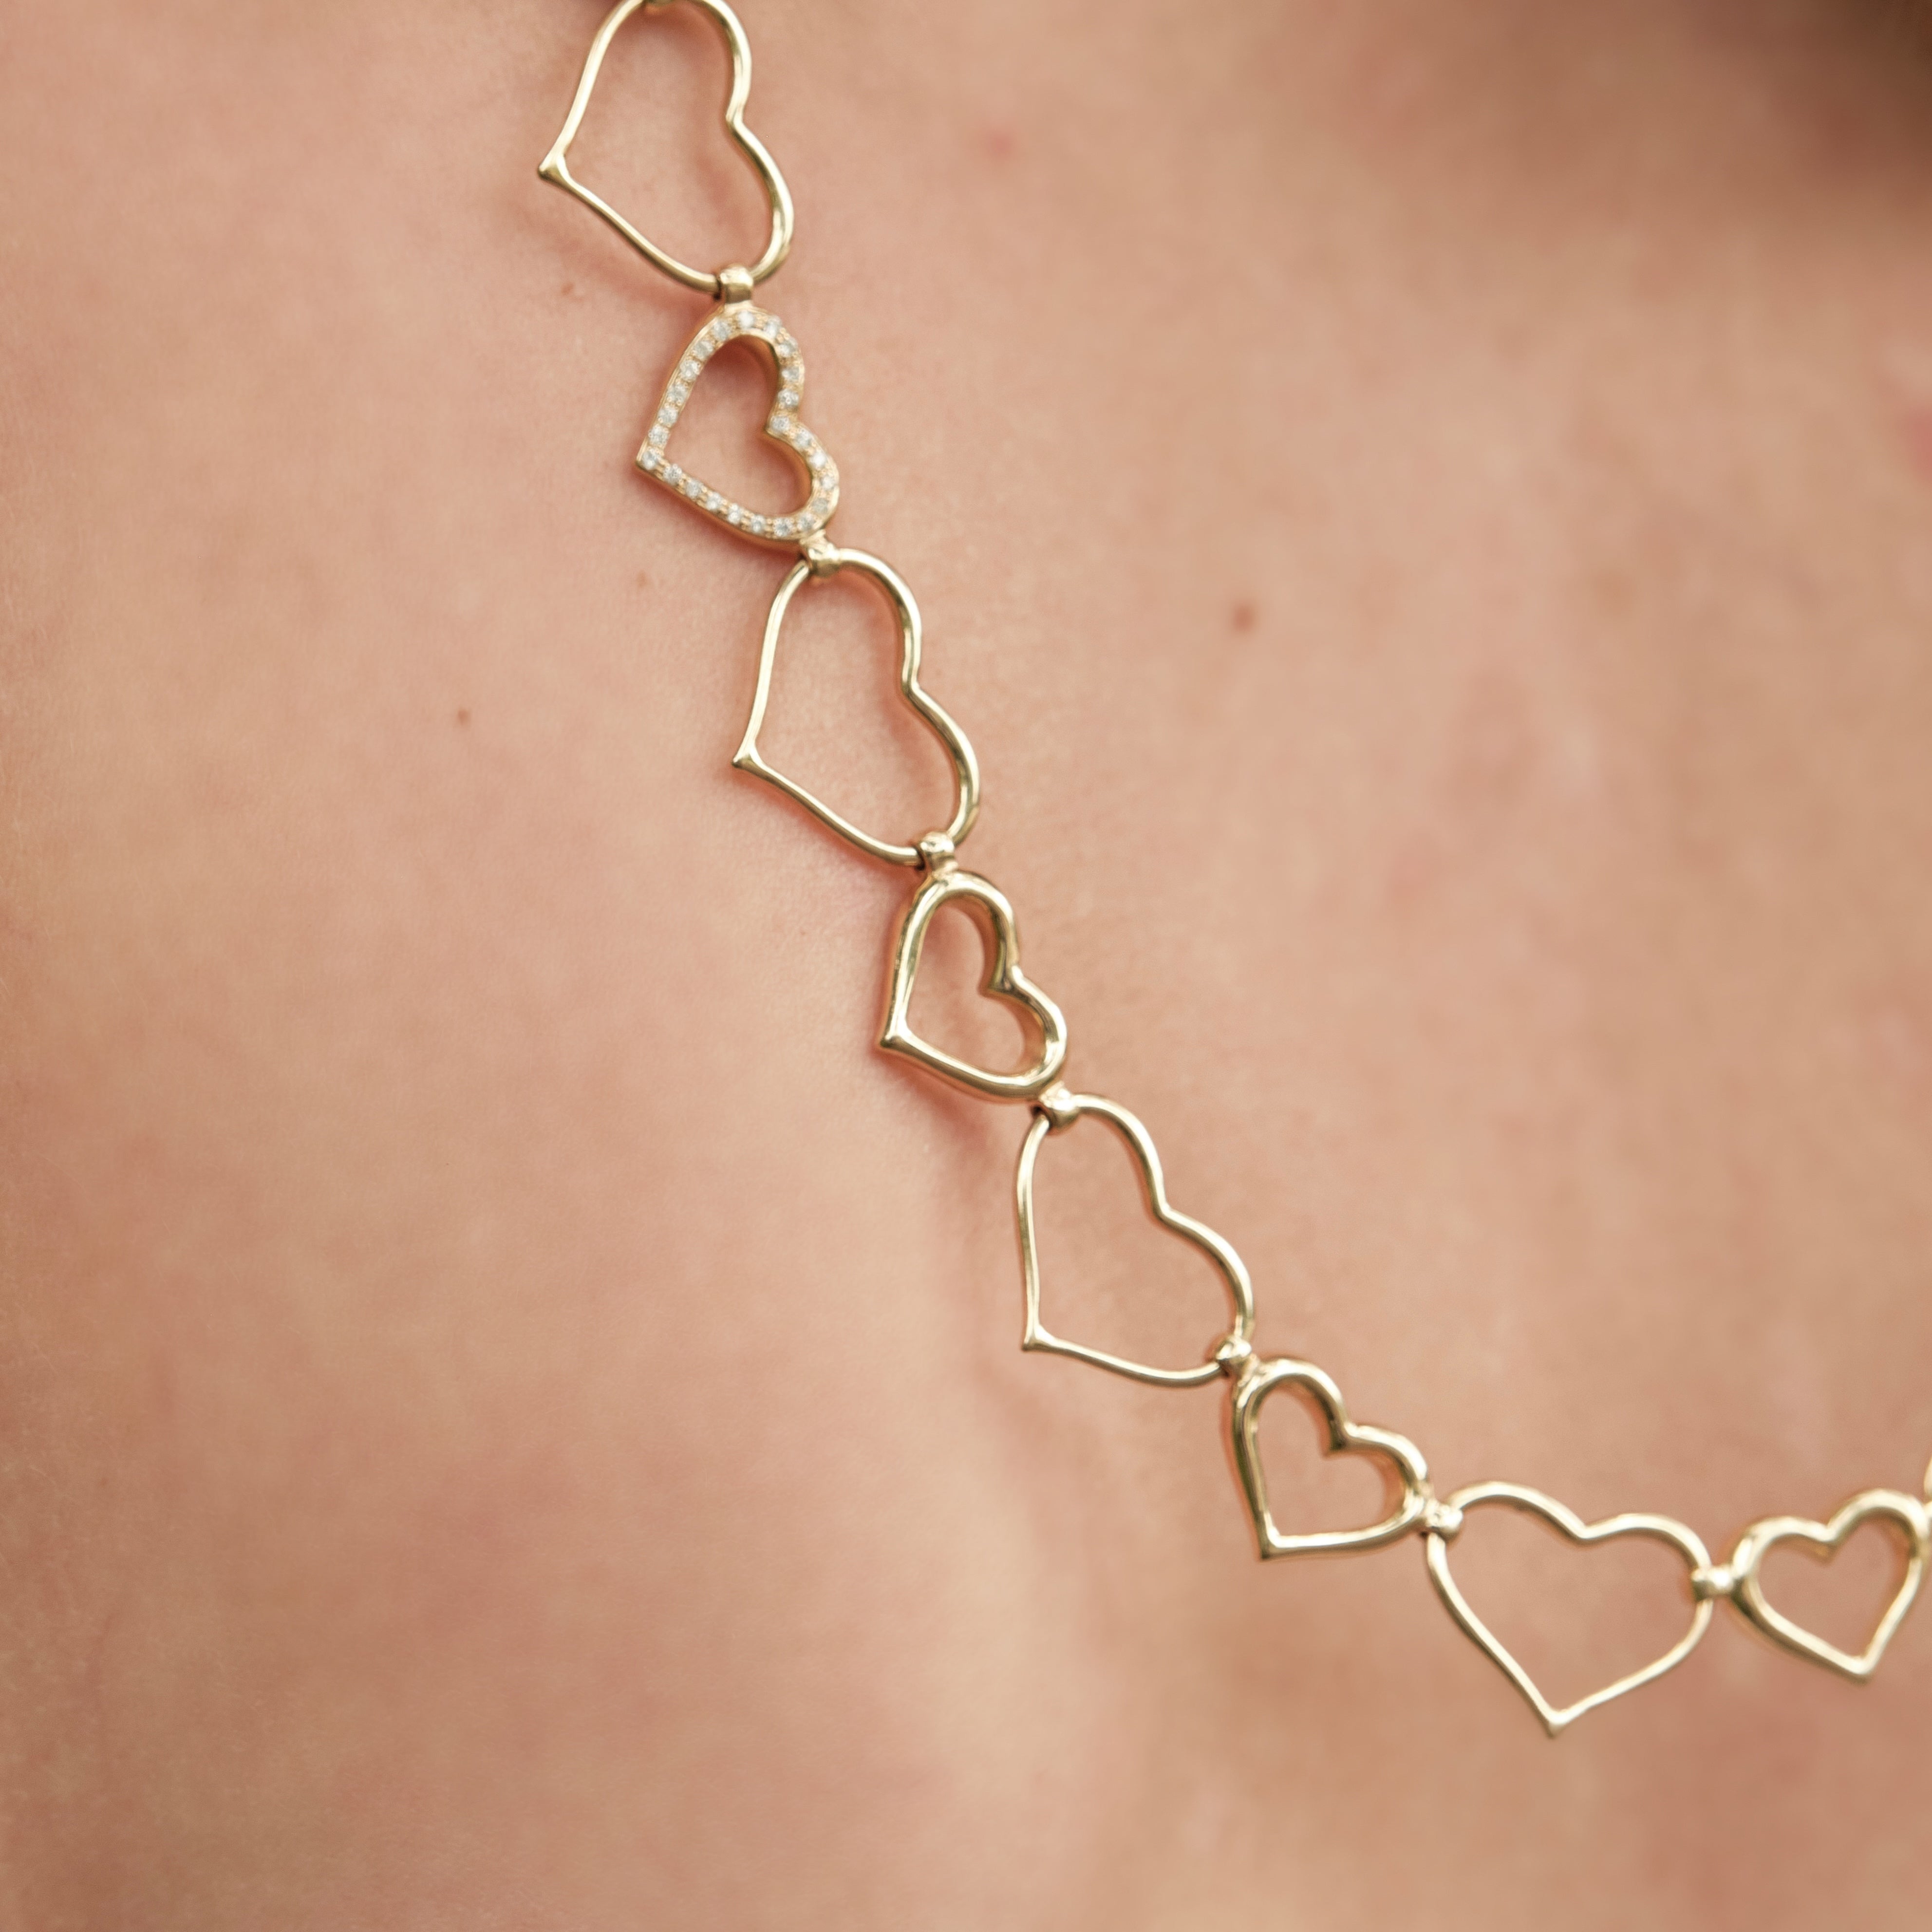 Believe in love Necklace / Bracelet